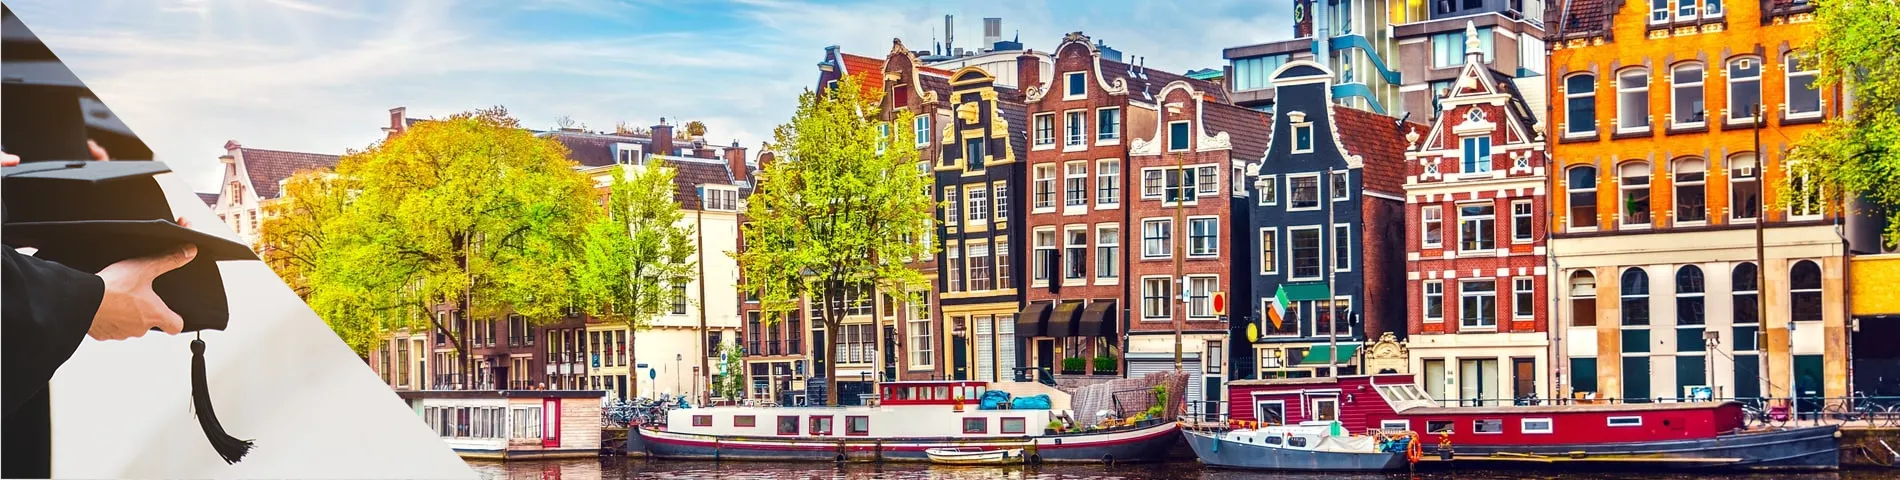 أمستردام - الدورات الجامعية